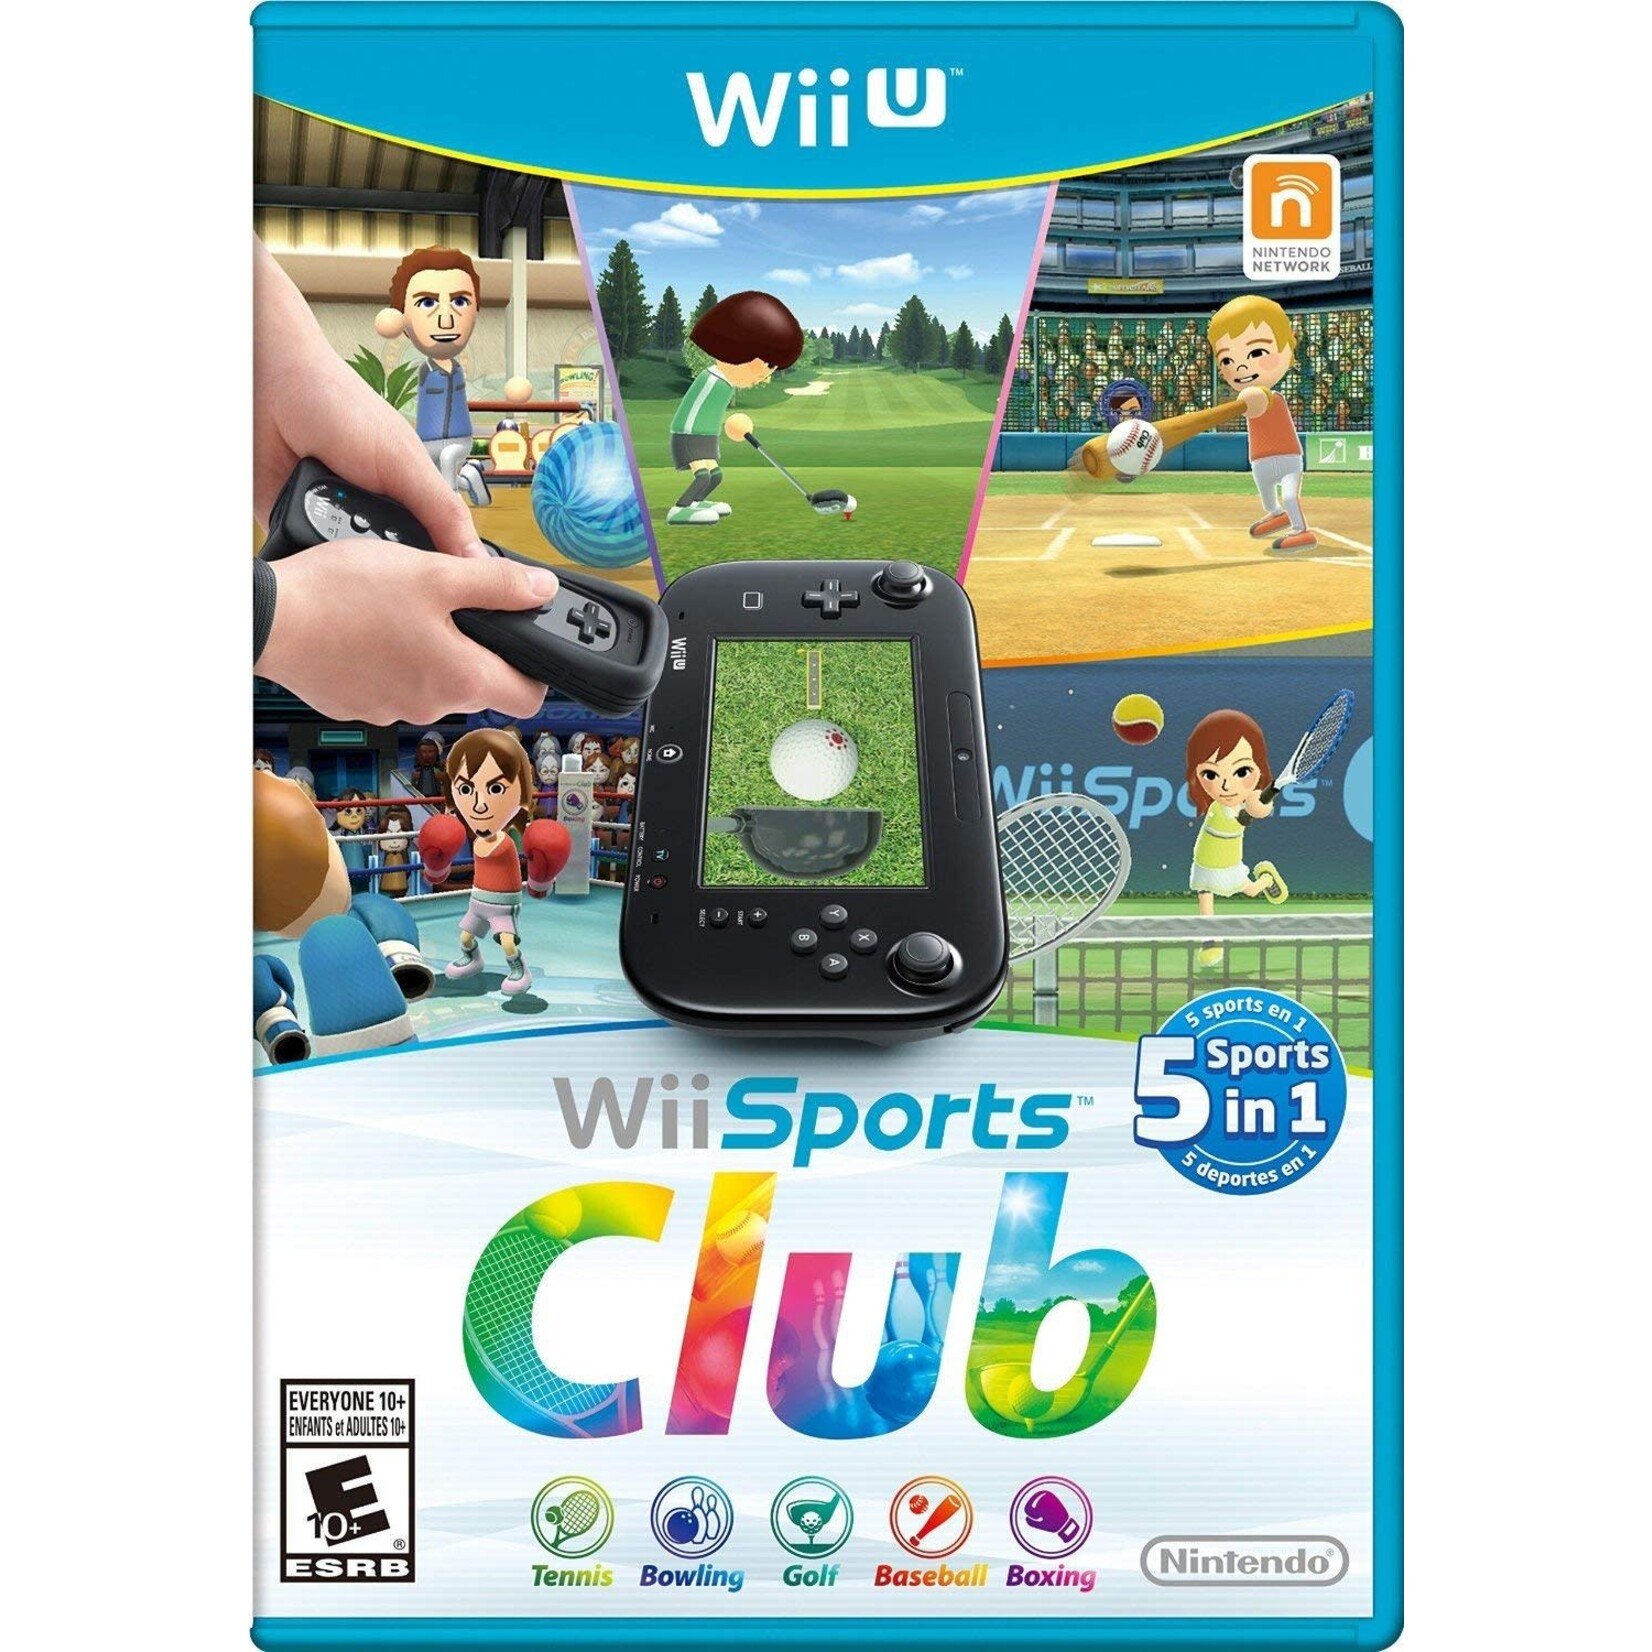 WIIUUSD-Wii Sports Club